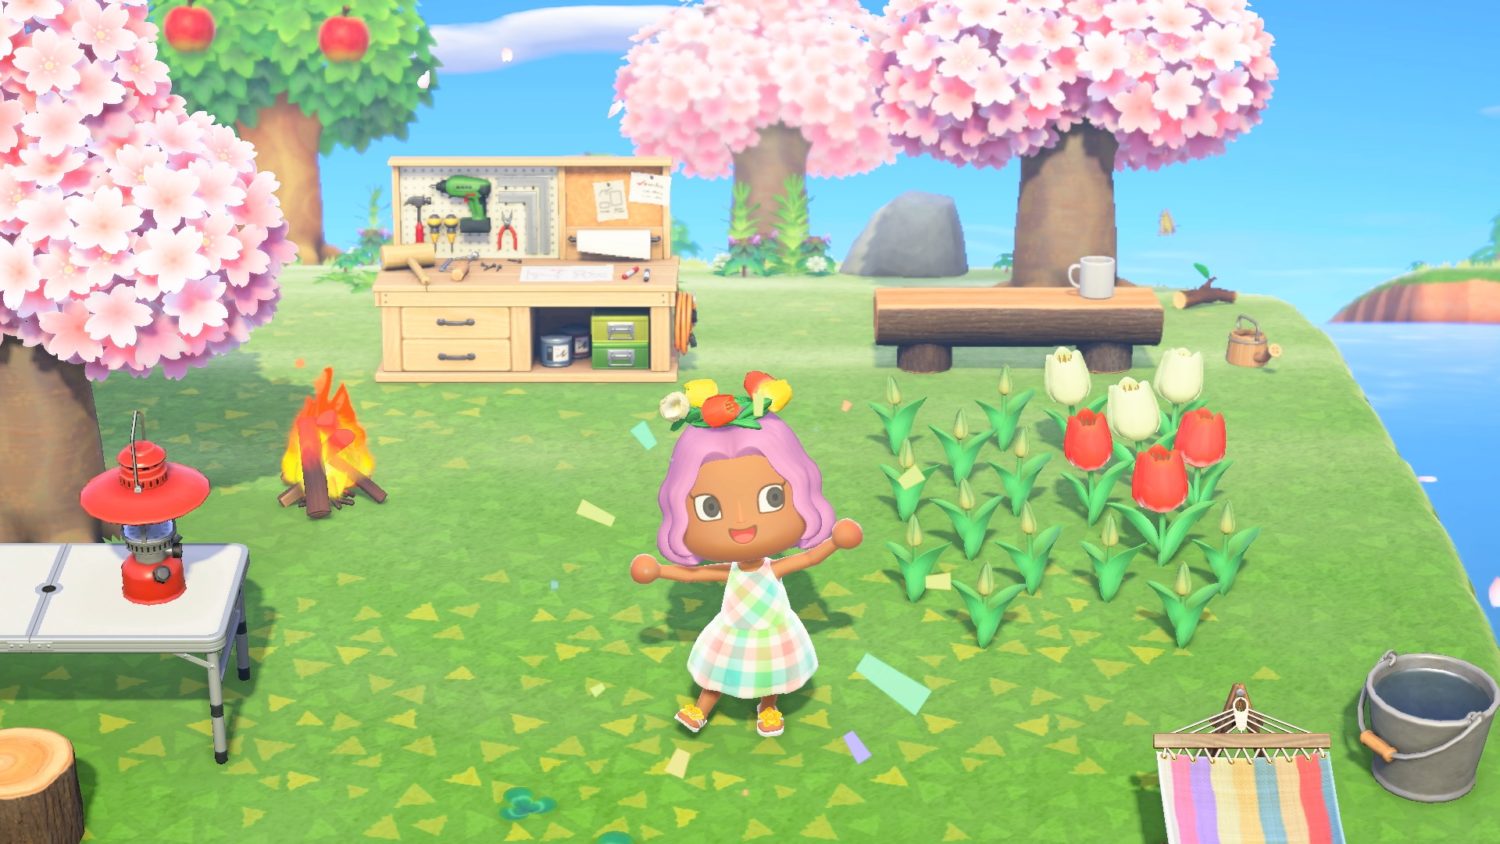 Animal Crossing Inspired Cherry Blossom Pochette Kit Make 